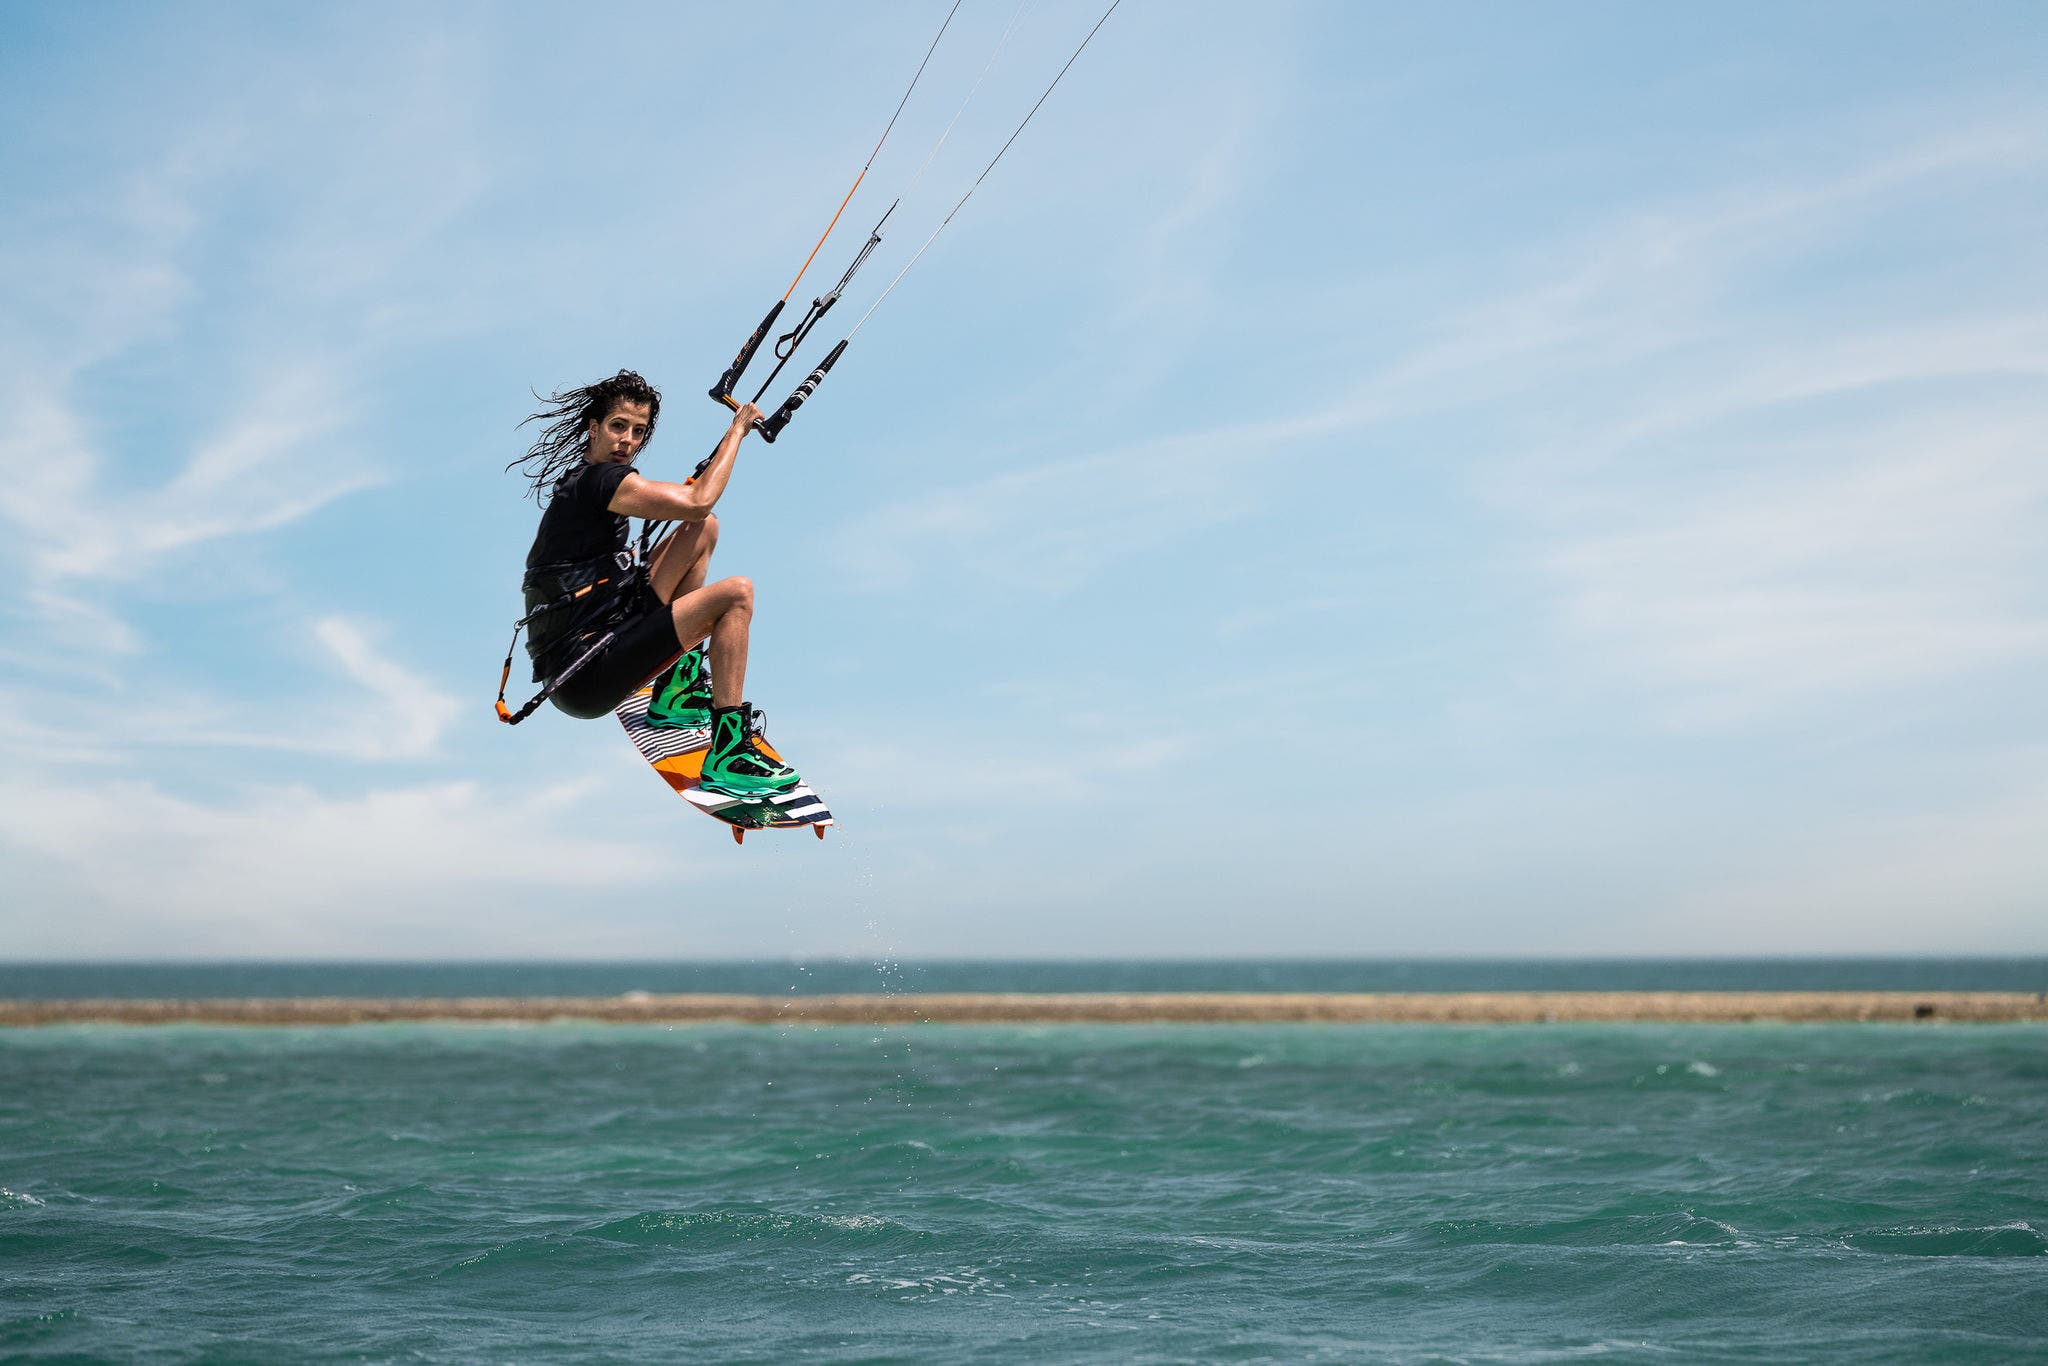 Découvrez les 7 raisons pour lesquelles le Qatar est la destination idéale pour le kitesurf.